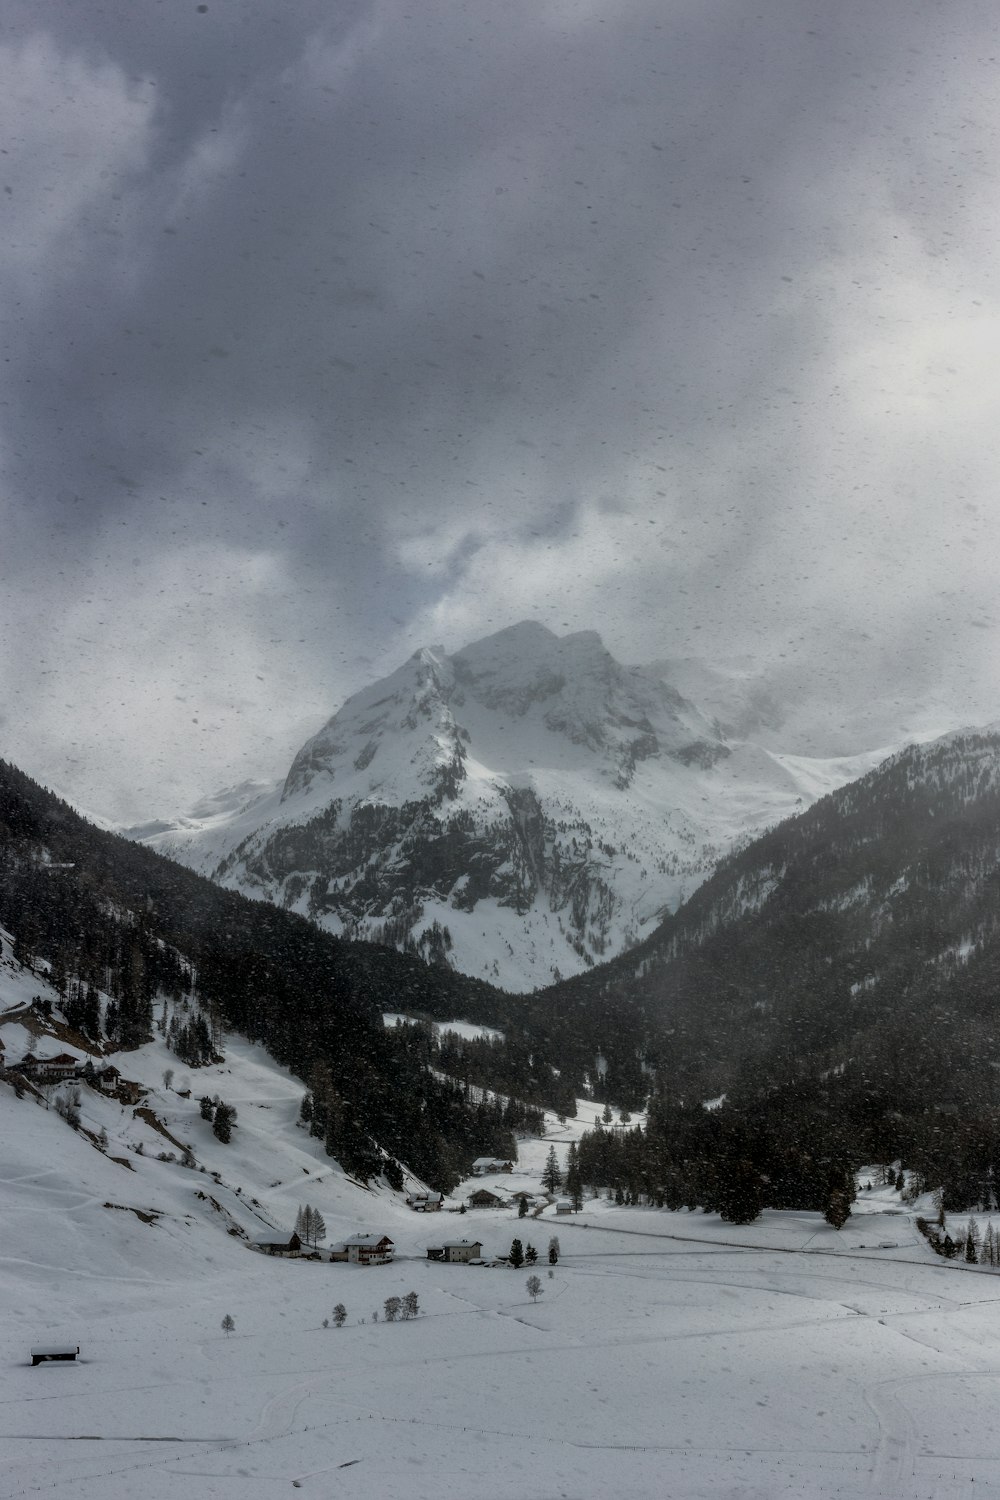 scala di grigi della montagna alpina coperta da nuvole scure